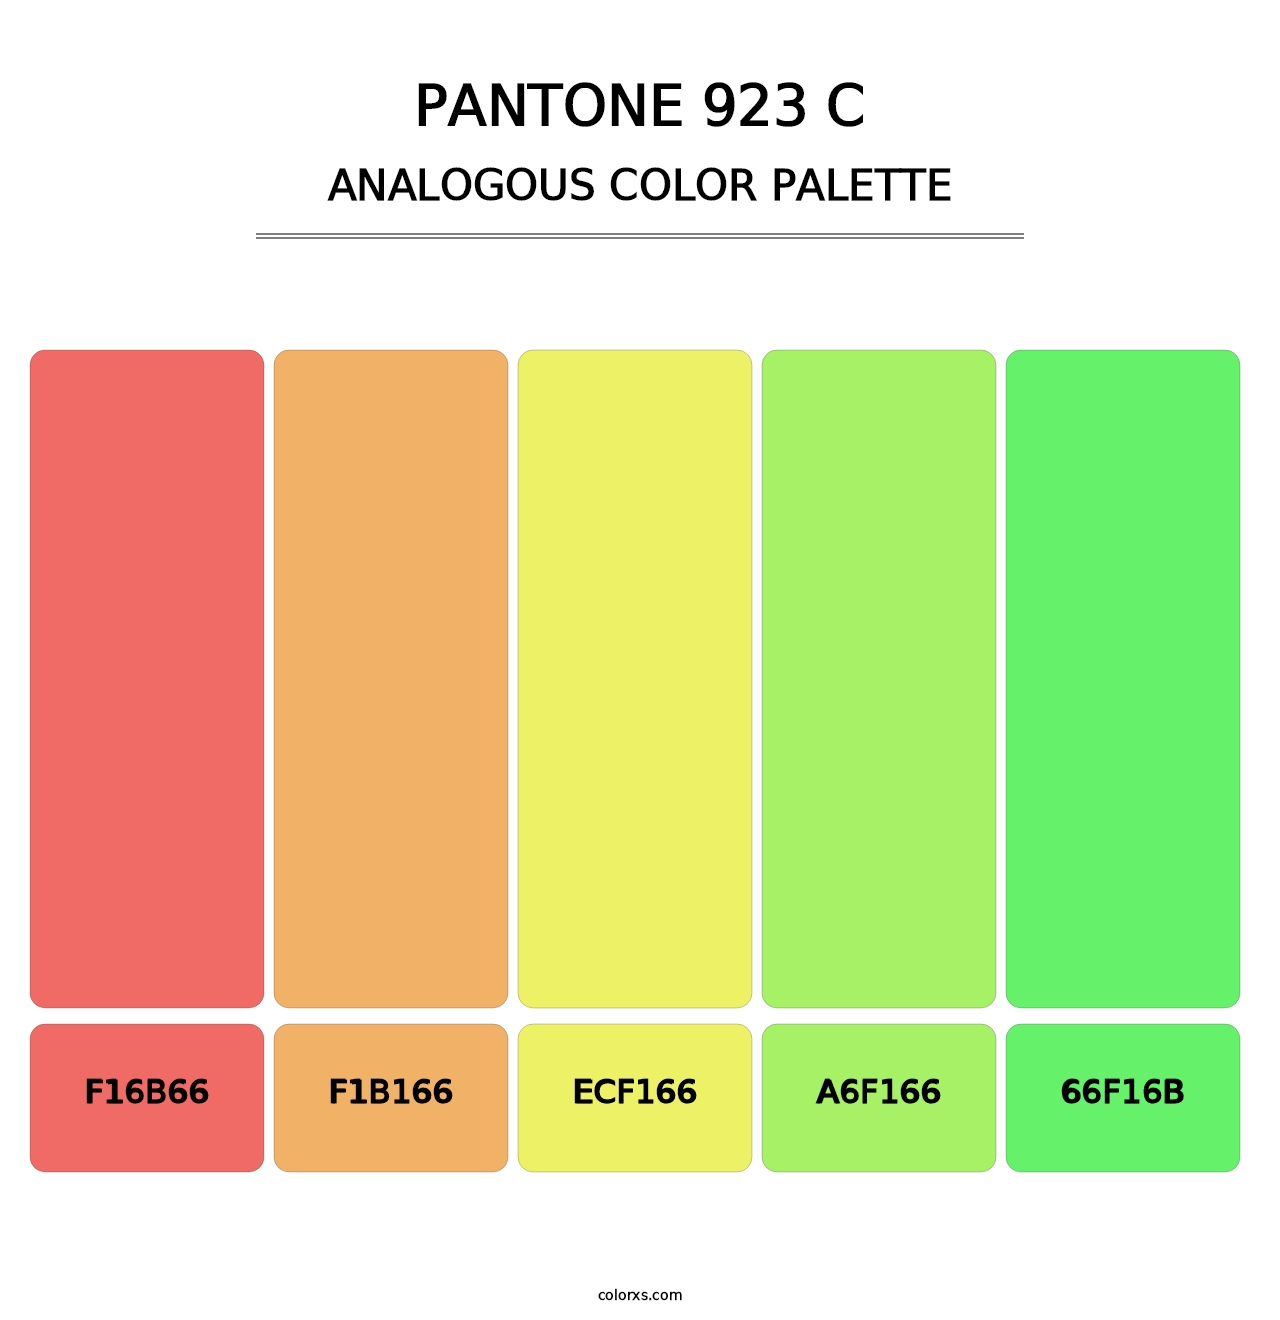 PANTONE 923 C - Analogous Color Palette